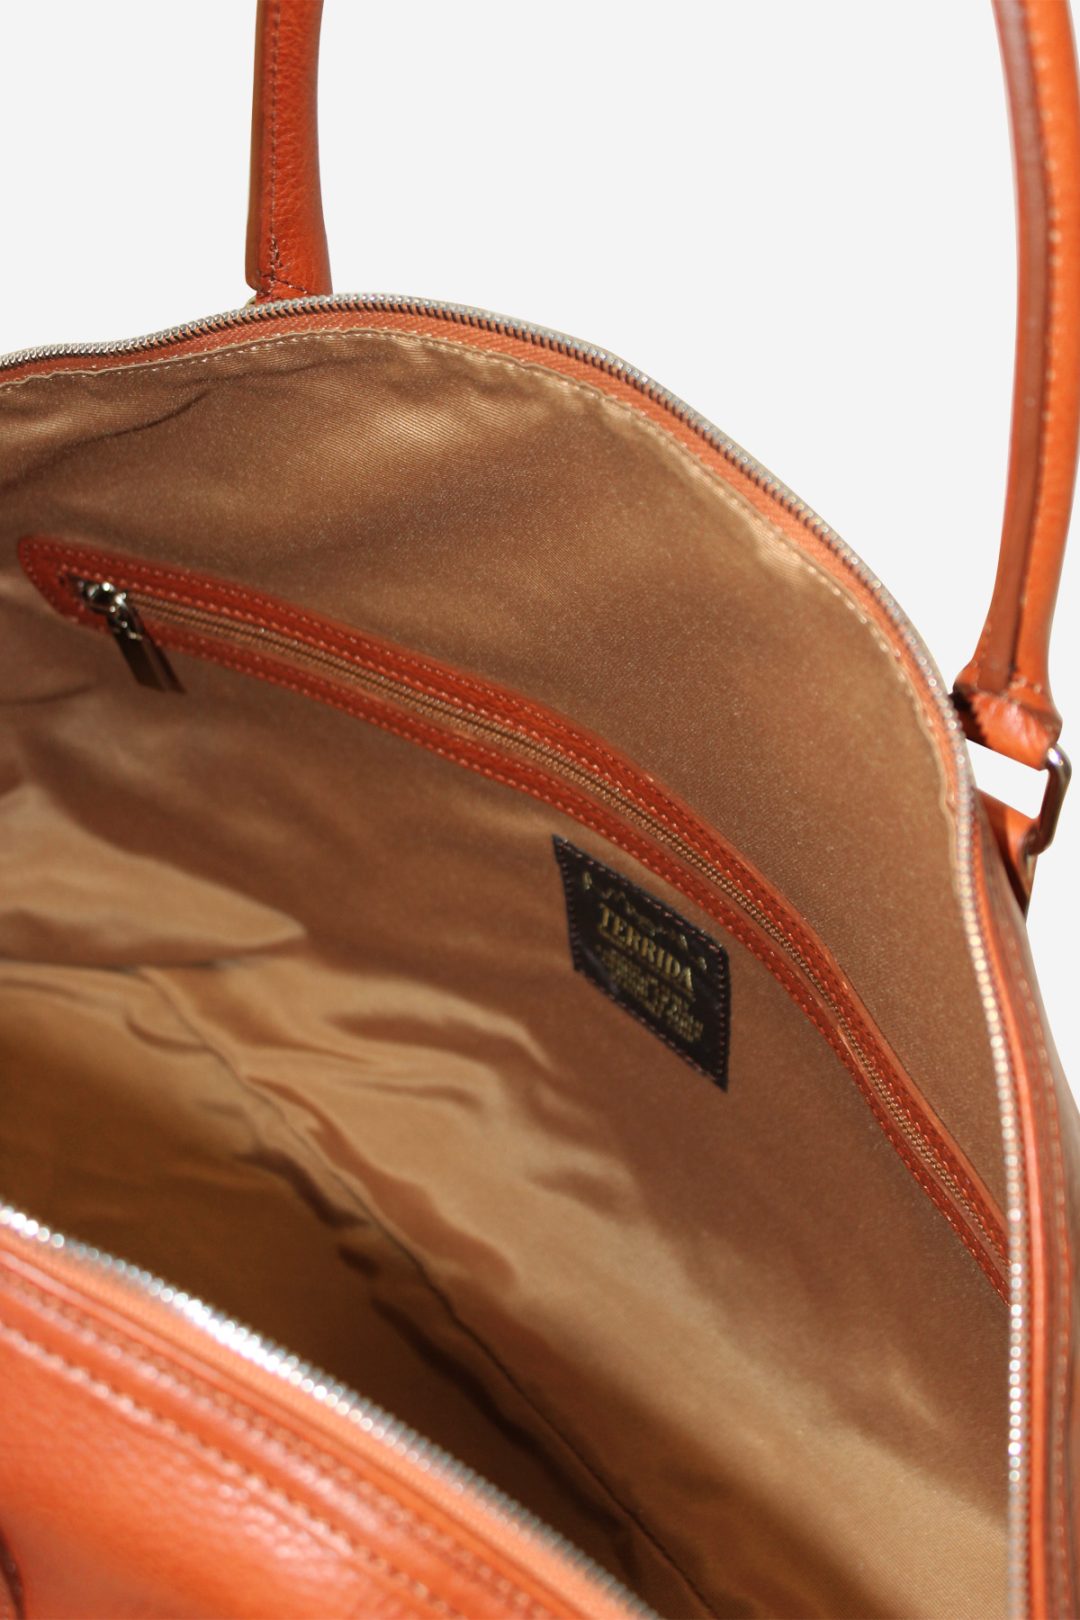 Leather Dome Handbag